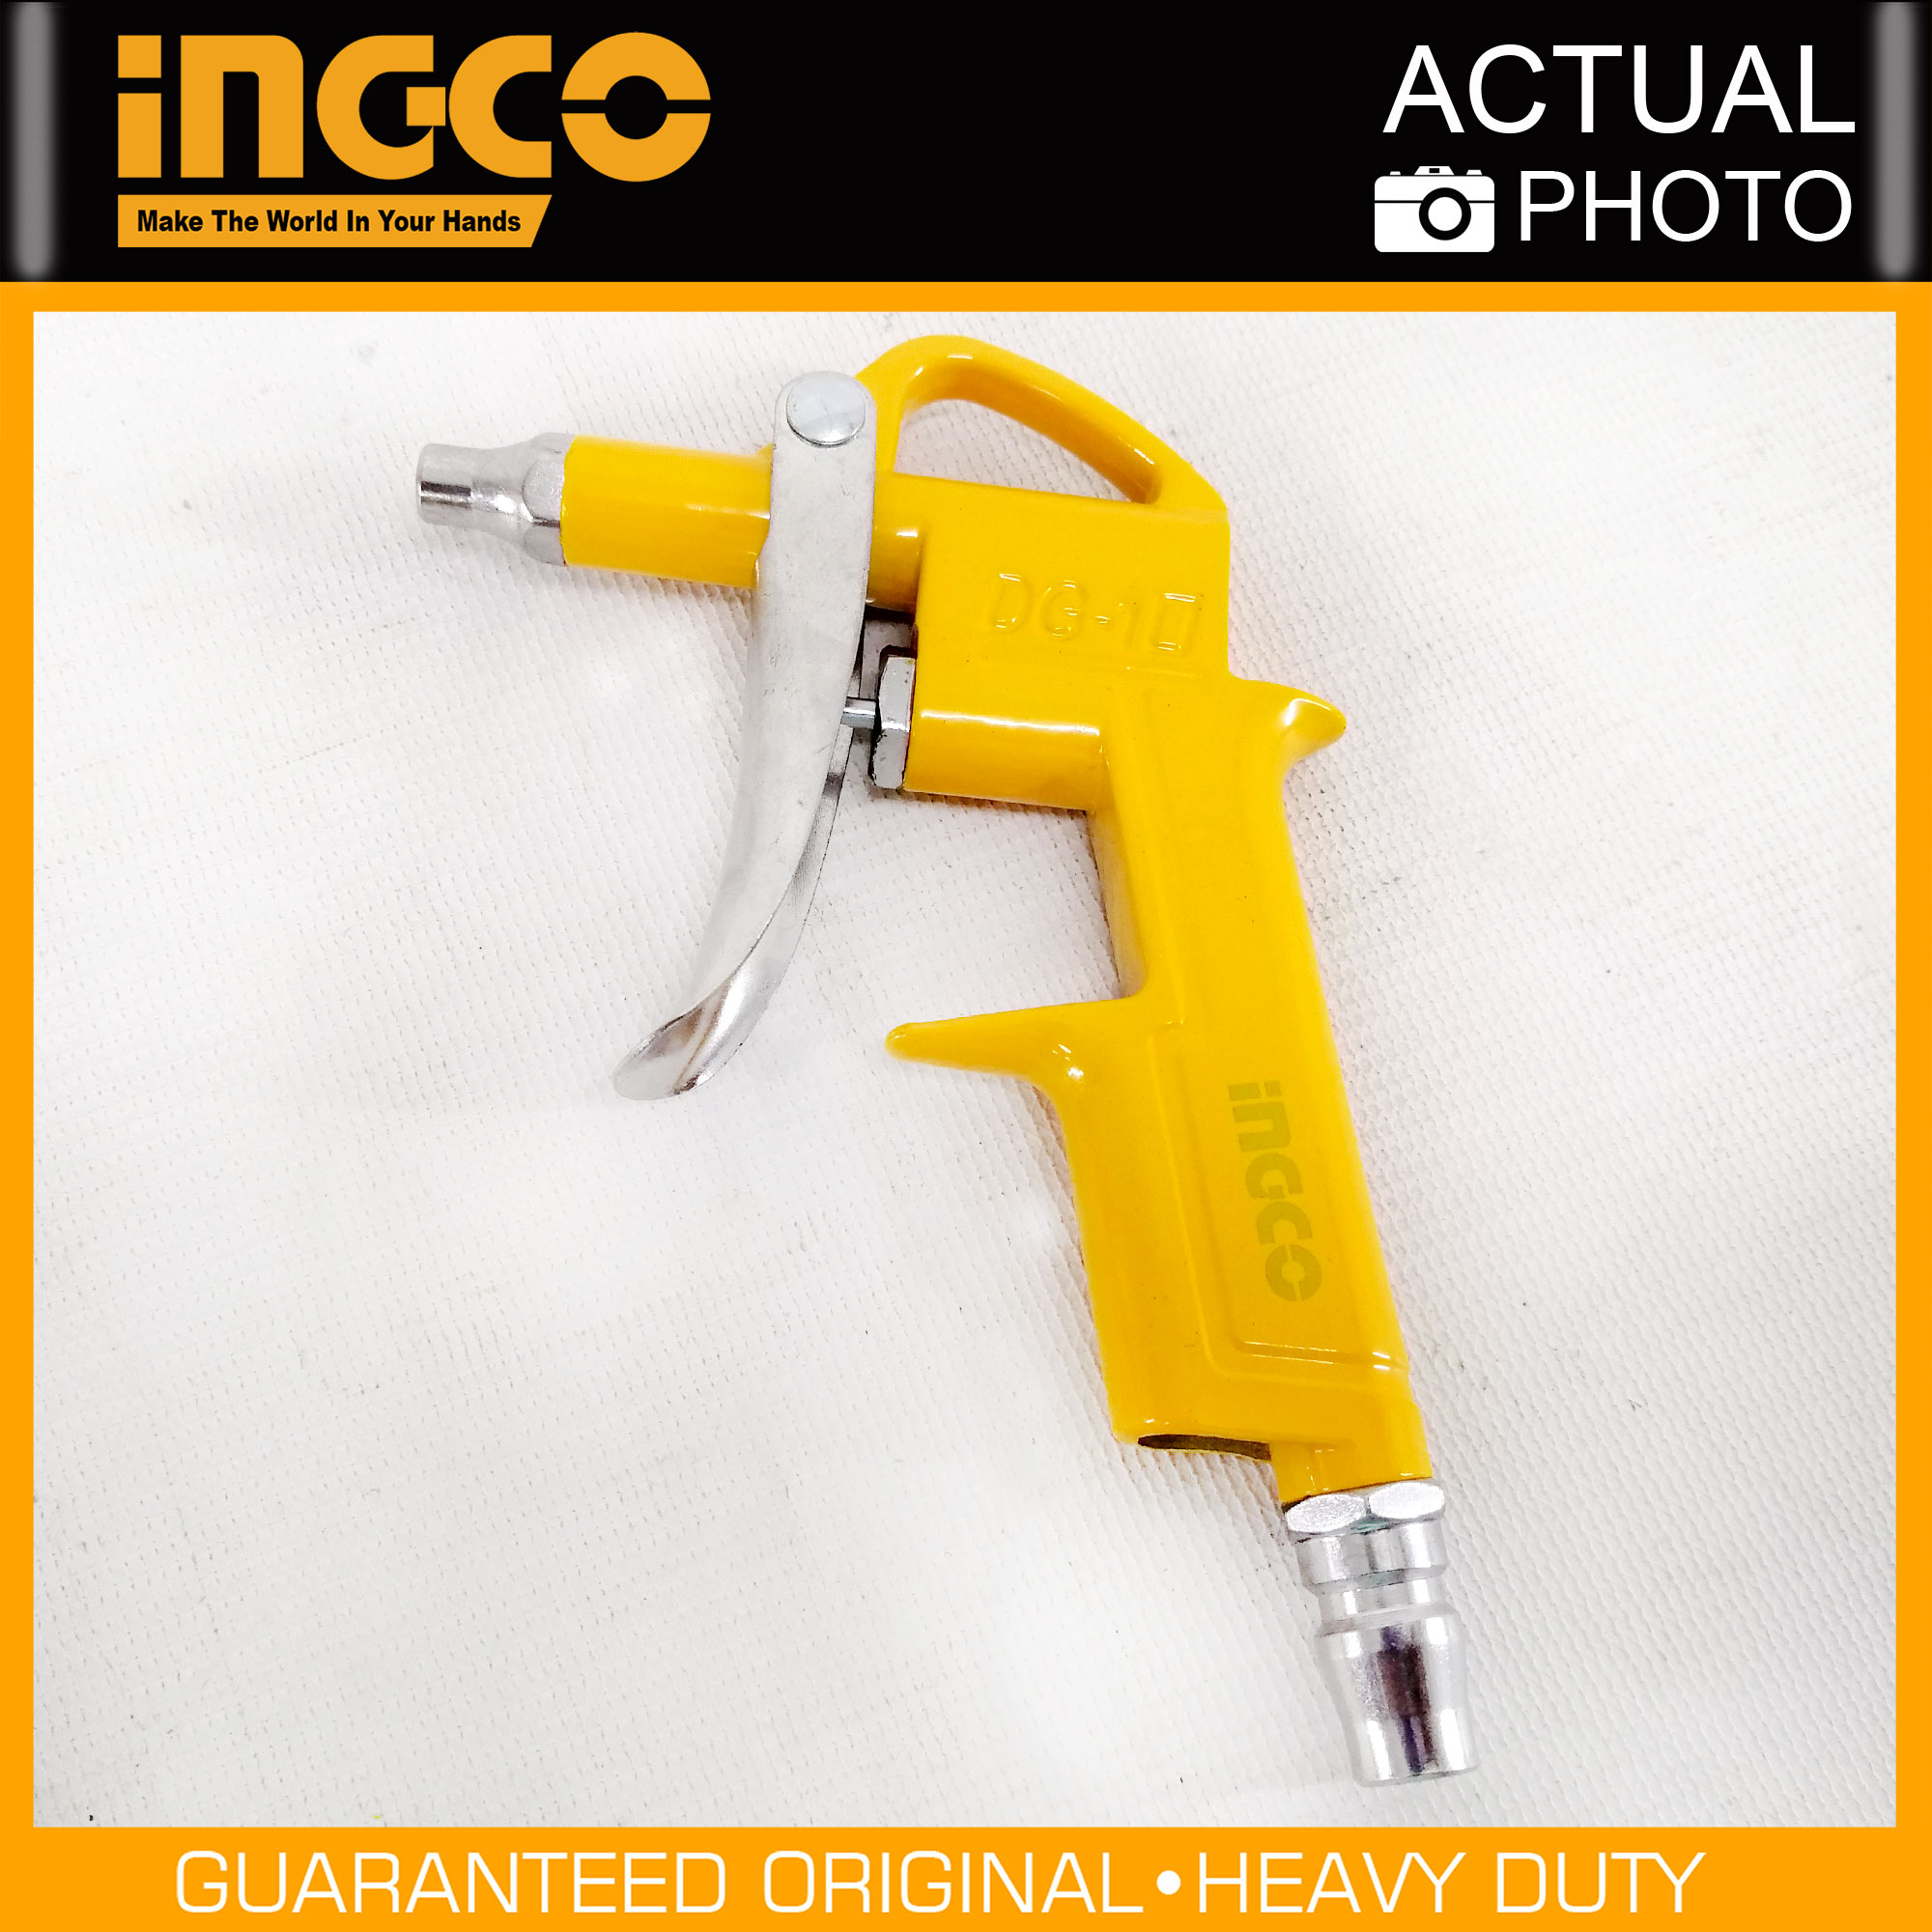 Hình ảnh 2 của mặt hàng Bộ 5 công cụ dùng khí Ingco AKT0051-3